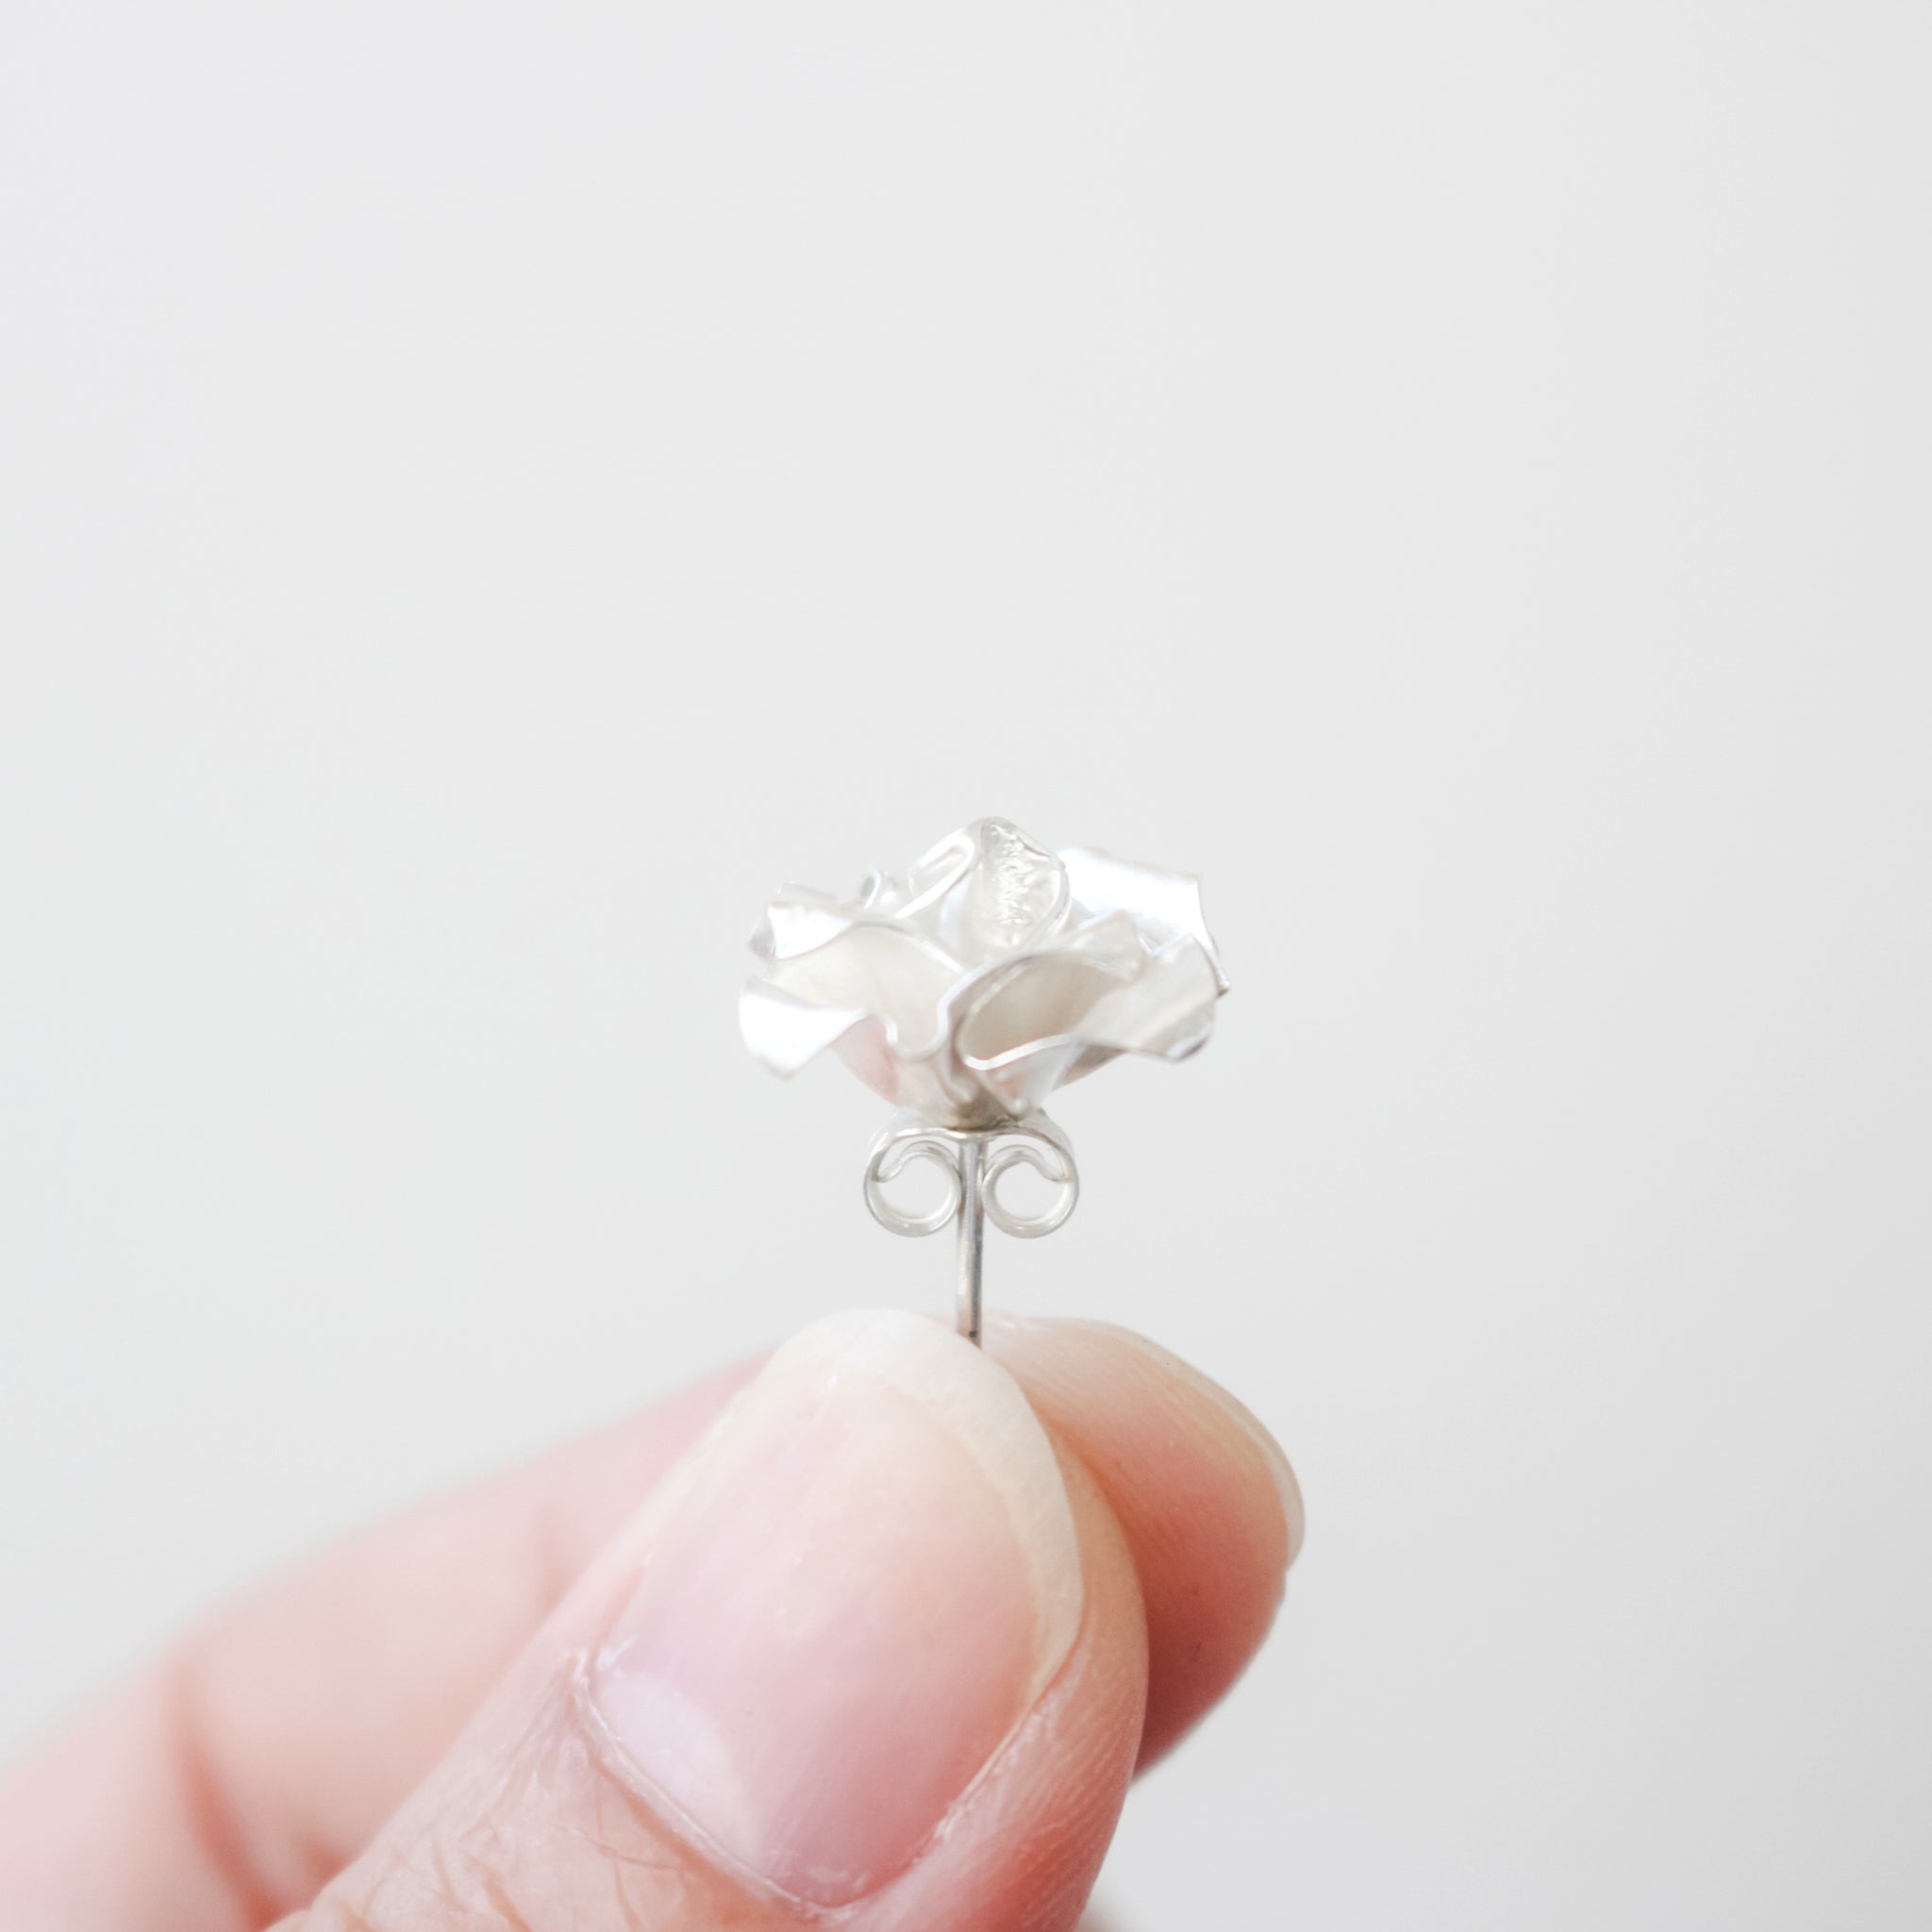 Origami Rose Earrings / Paper Rose Stud / White Rose Earrings